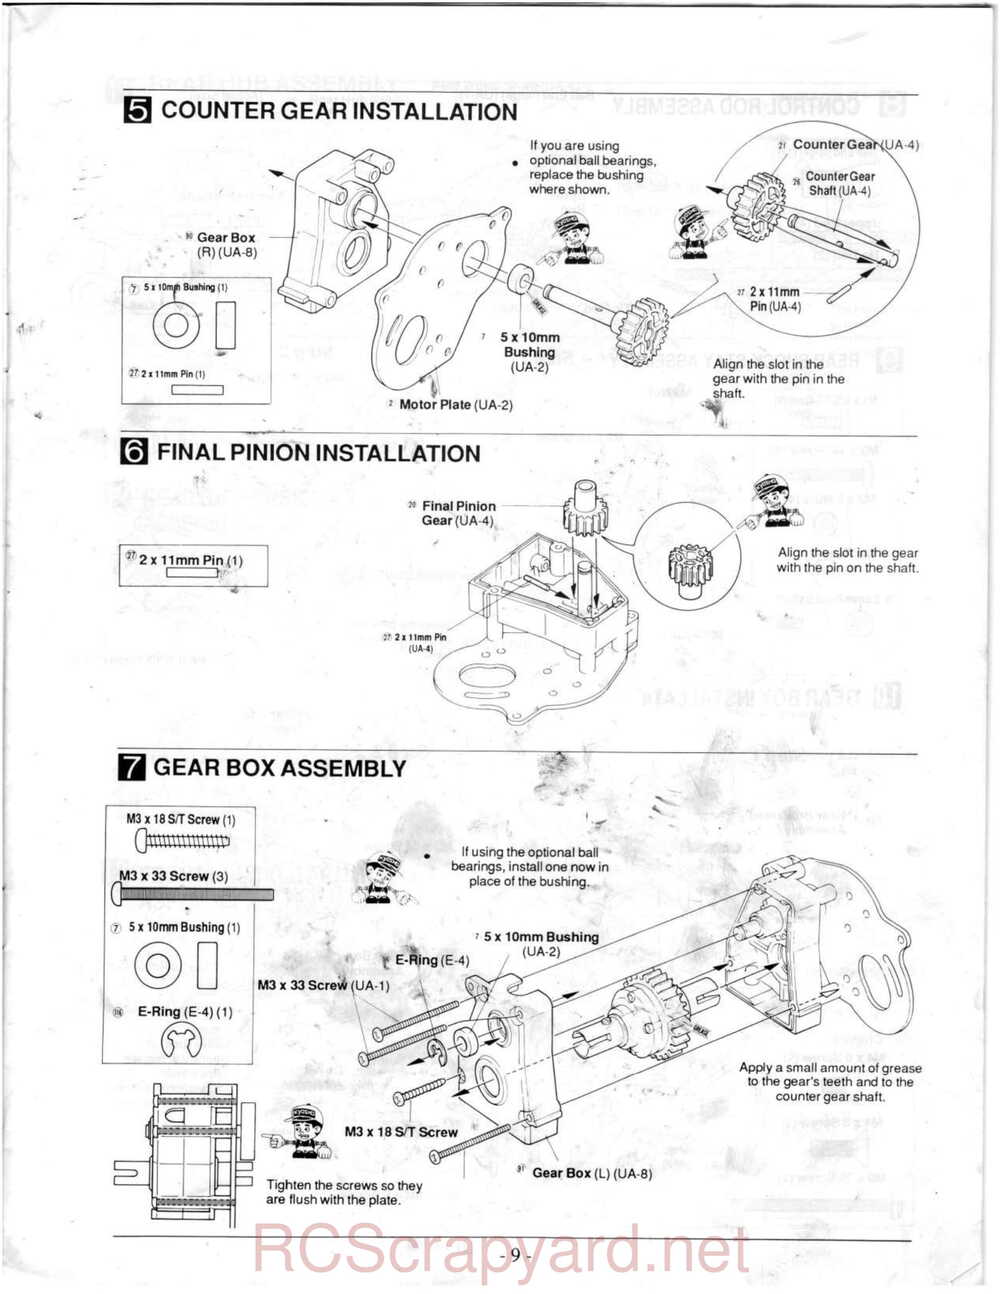 Kyosho - 3118 - Ultima-II - Manual - Page 09